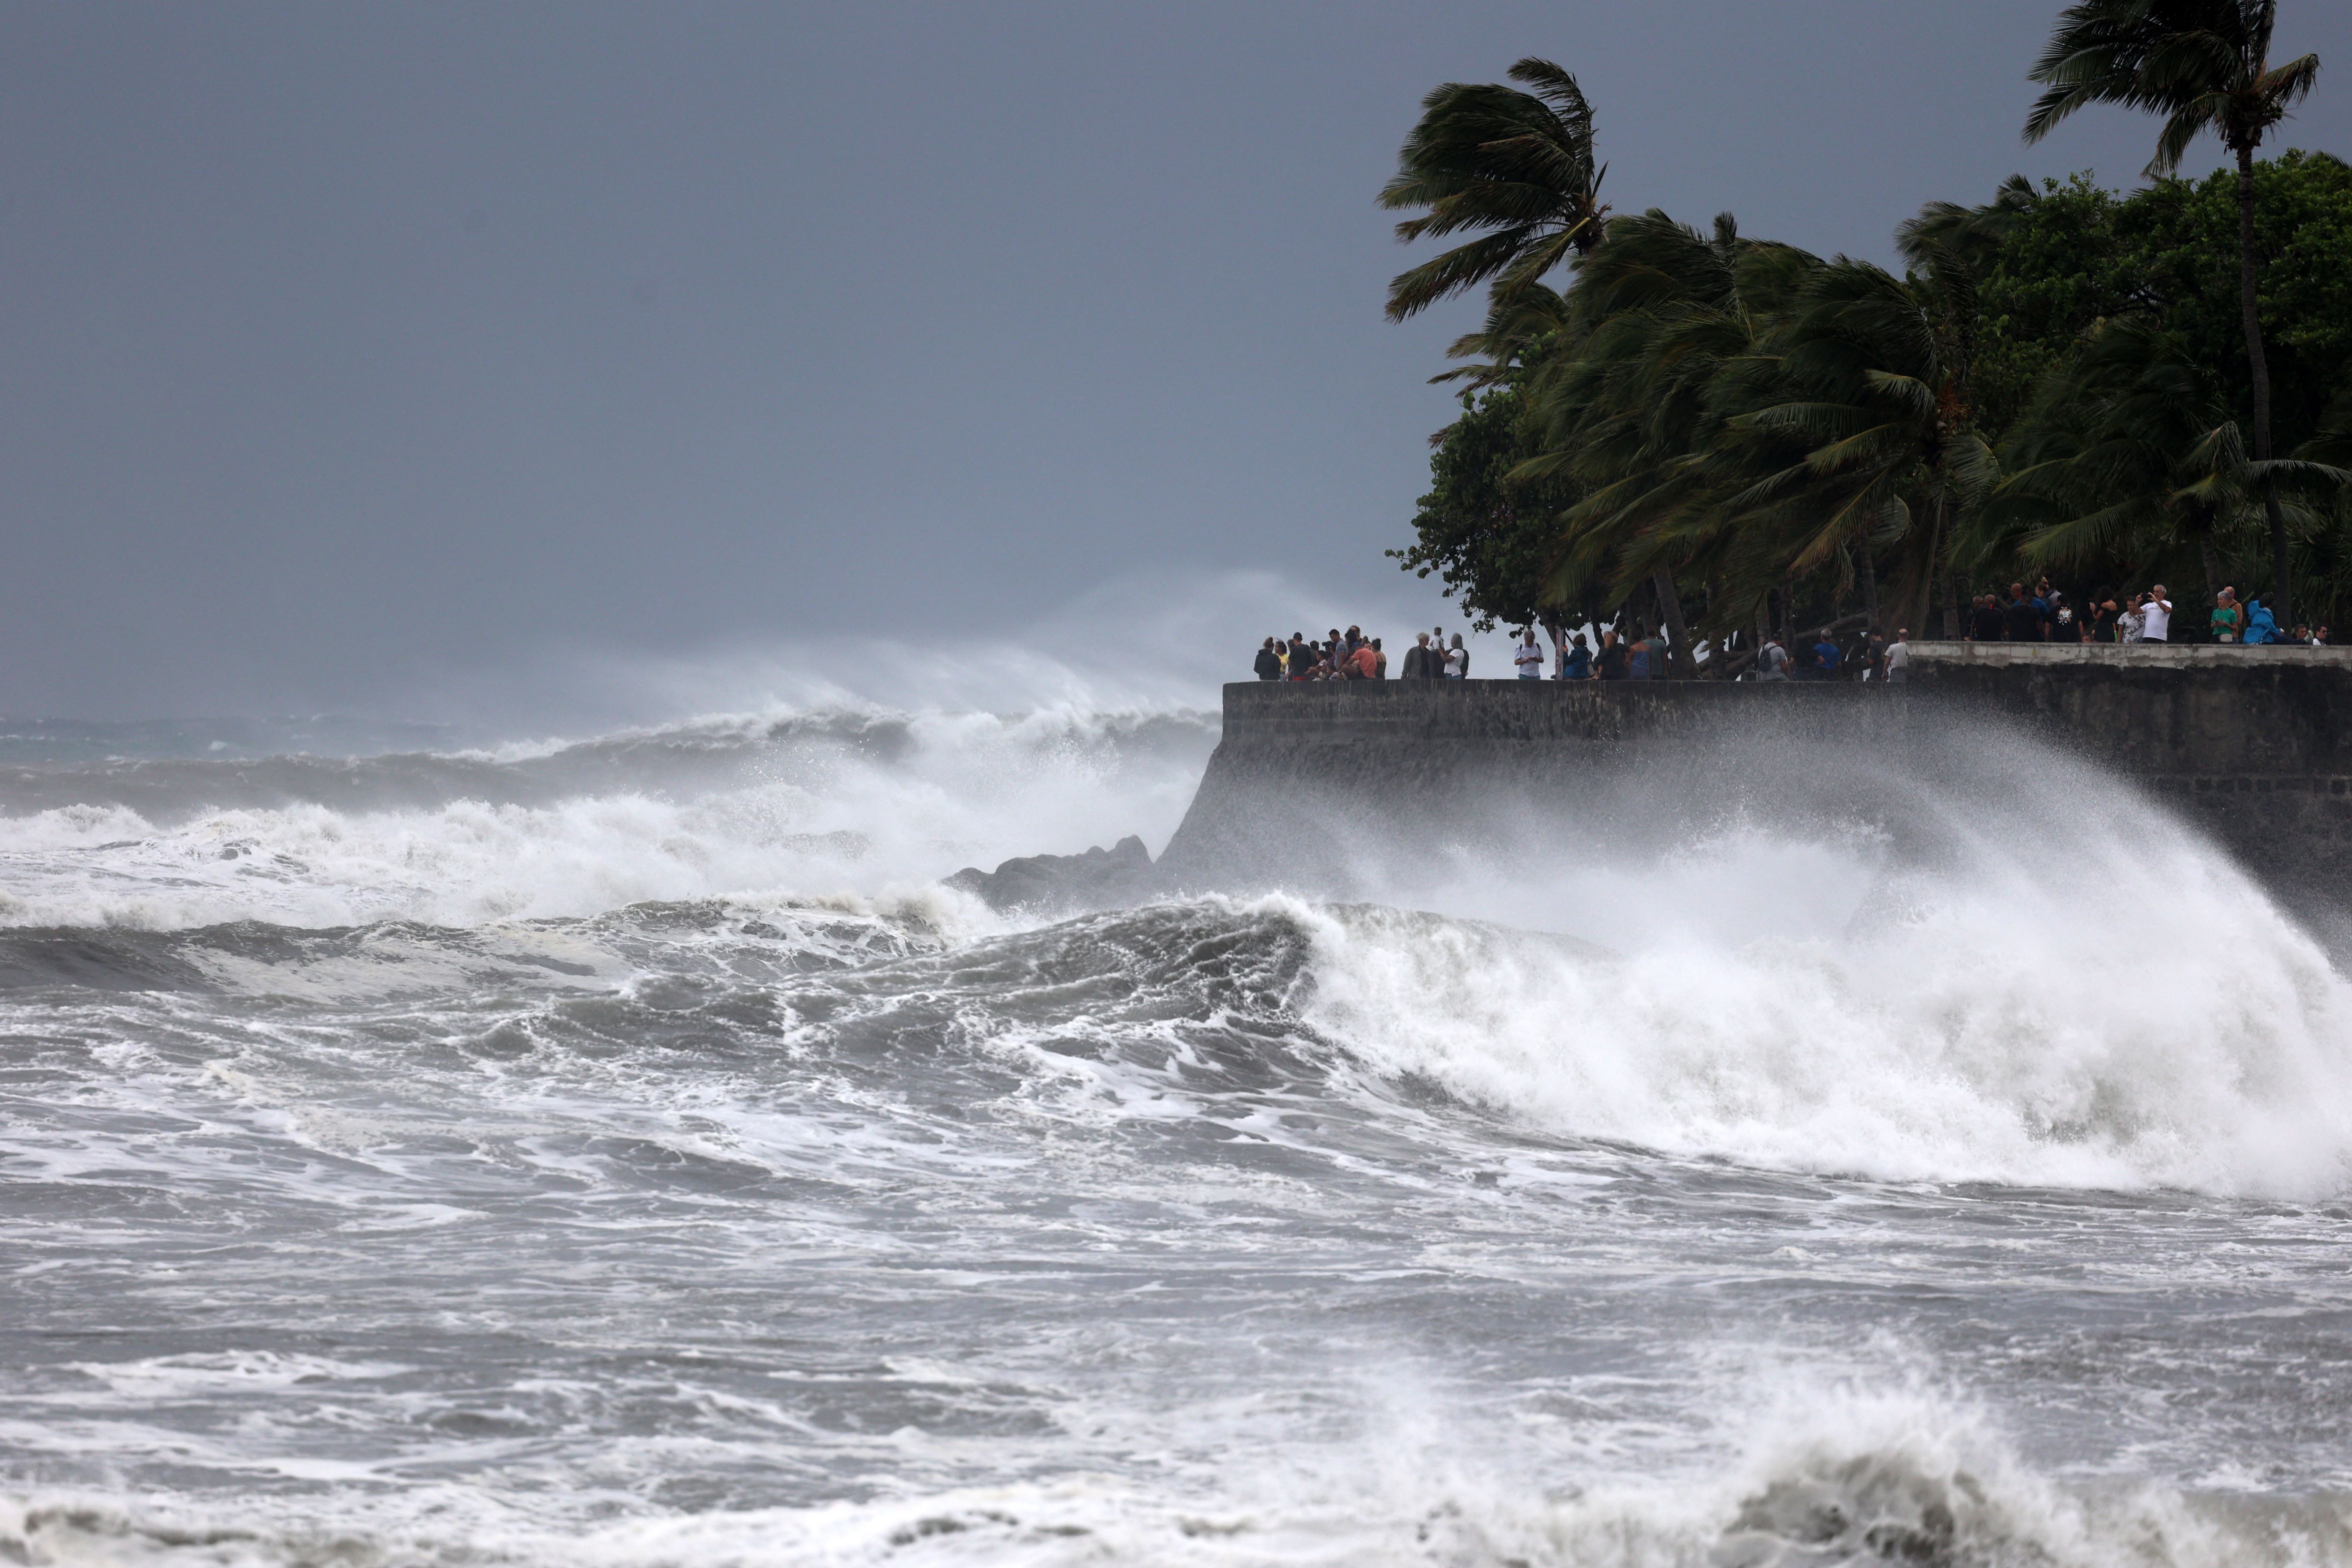 Le cyclone Emnati s'éloigne progressivement de l'île de la Réunion, ce qui a permis aux autorités de...